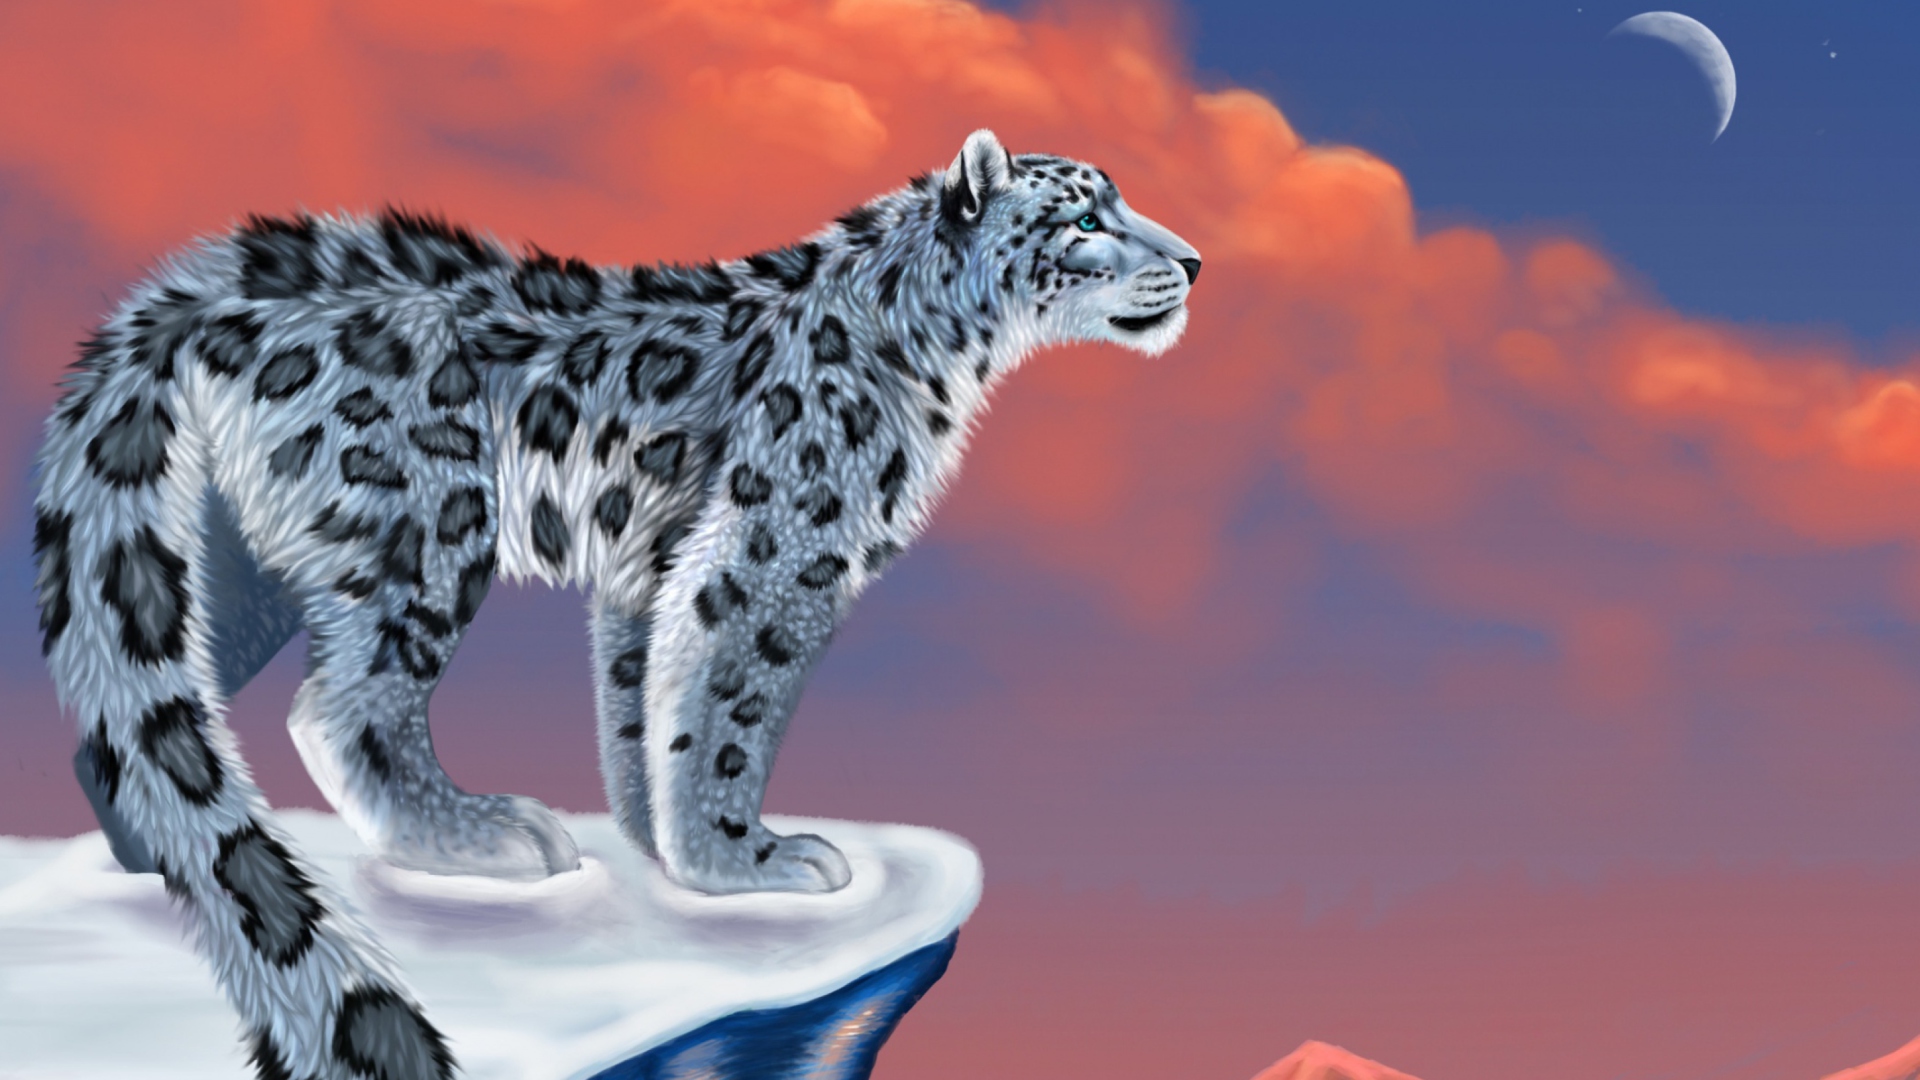 Обои Snow Leopard Drawing 1920x1080